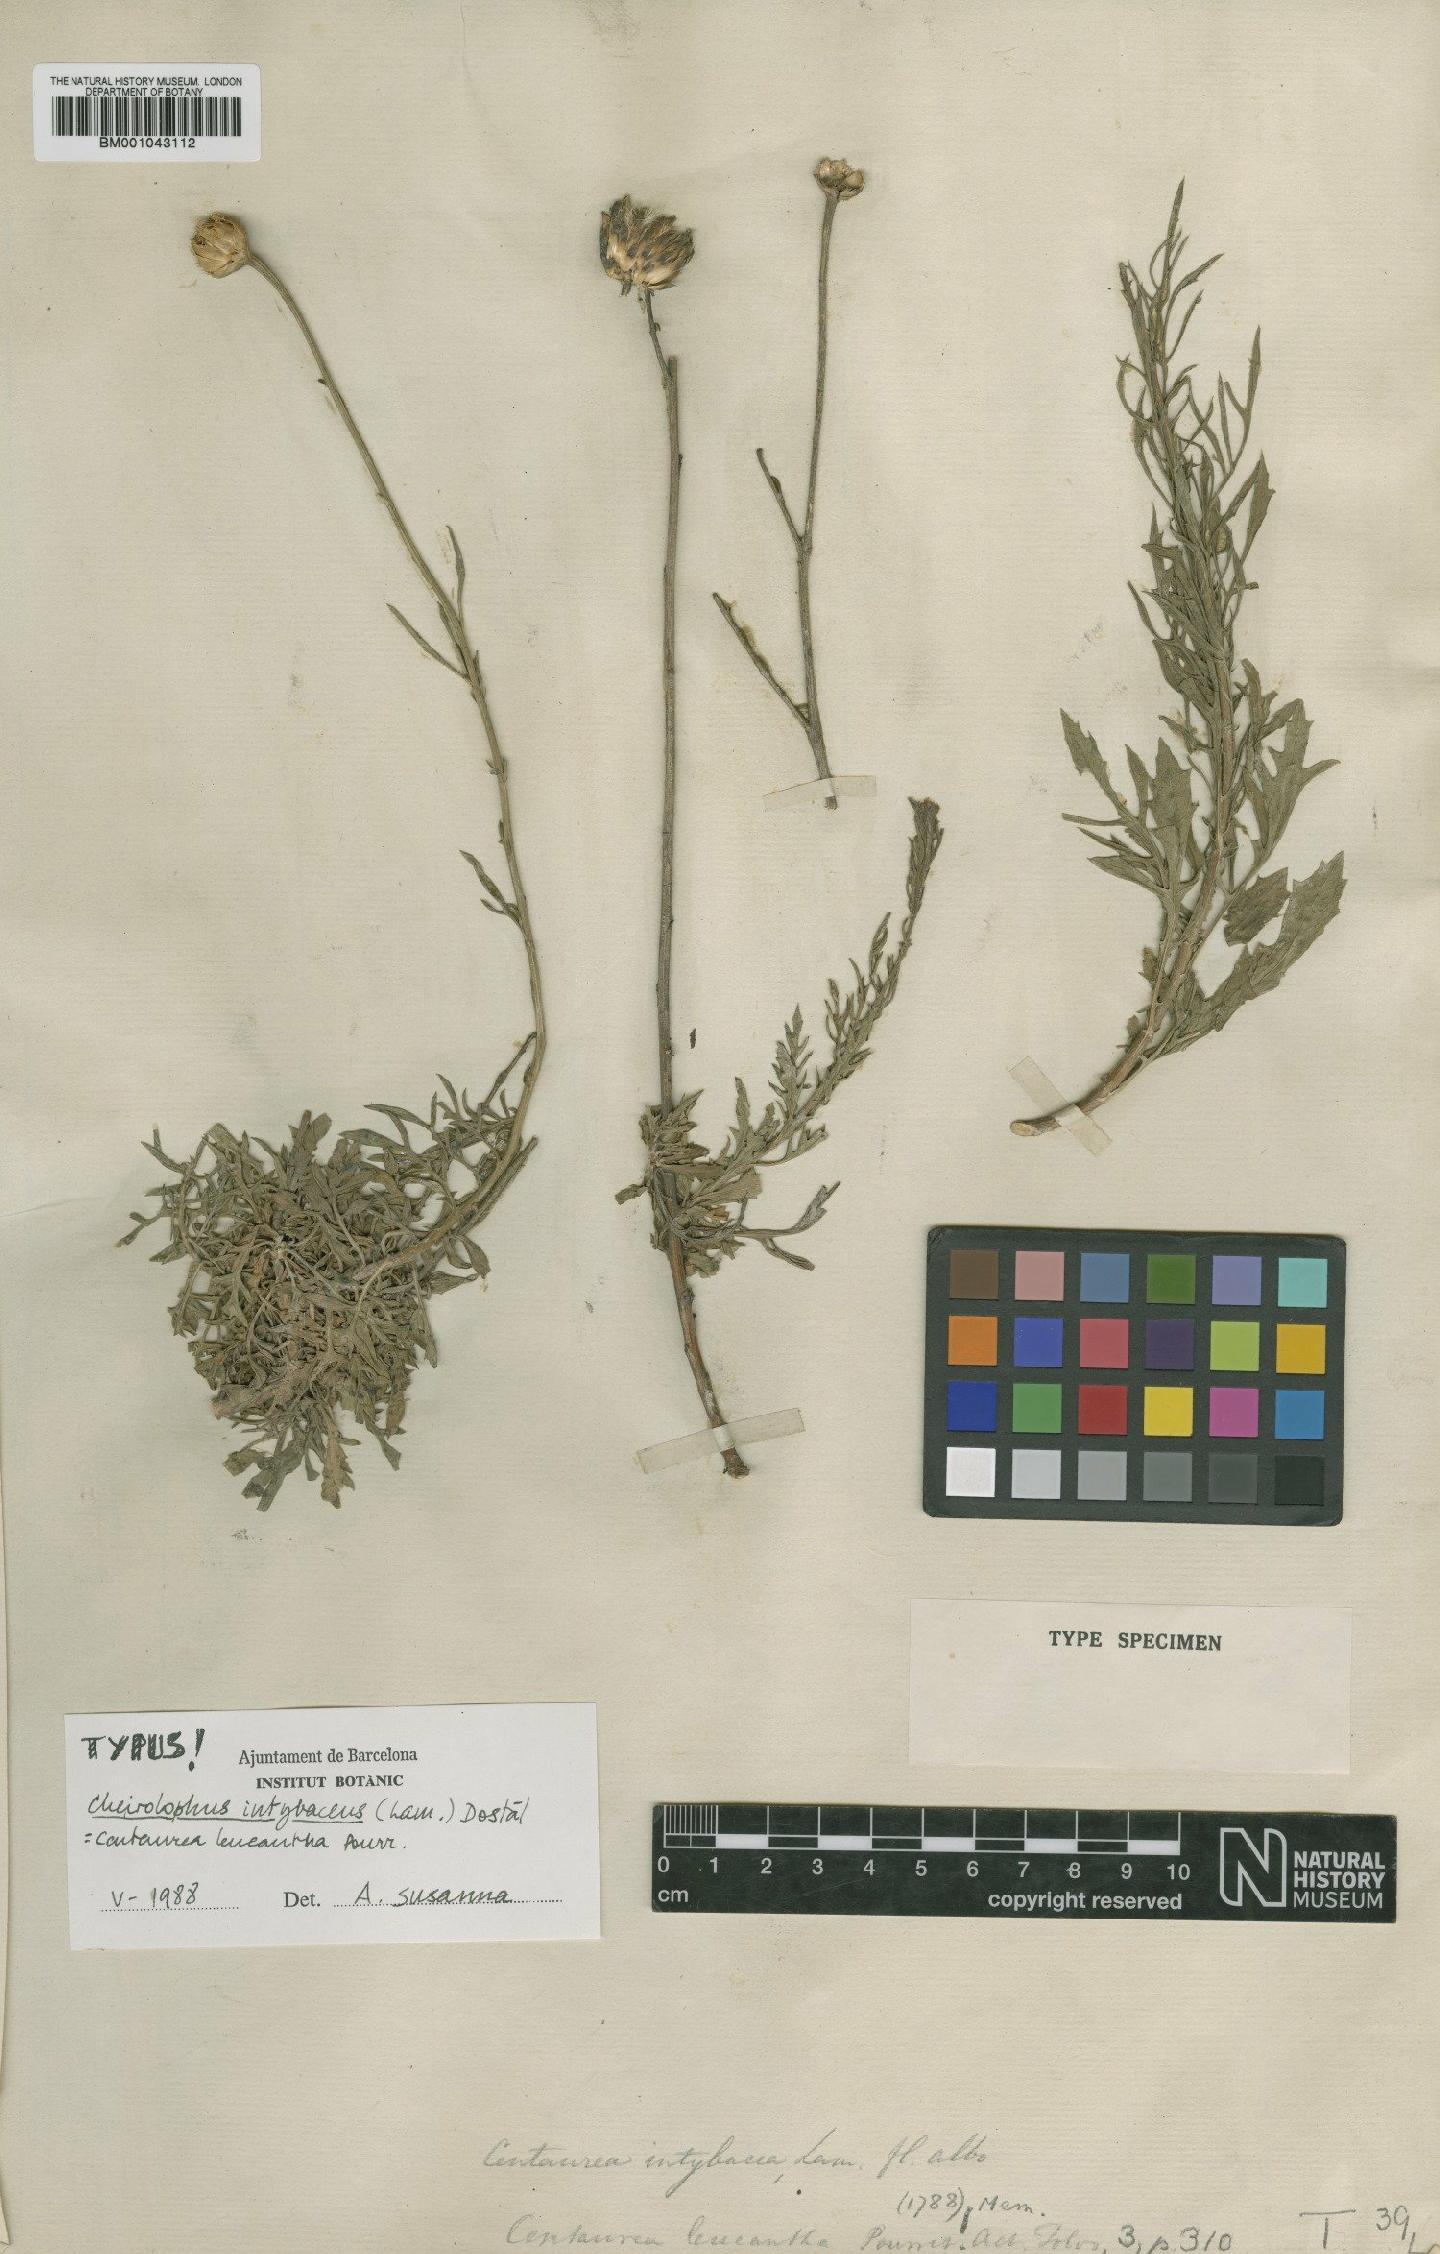 To NHMUK collection (Cheirolophus intybaceus (Lam.) Dostál; Type; NHMUK:ecatalogue:1985905)